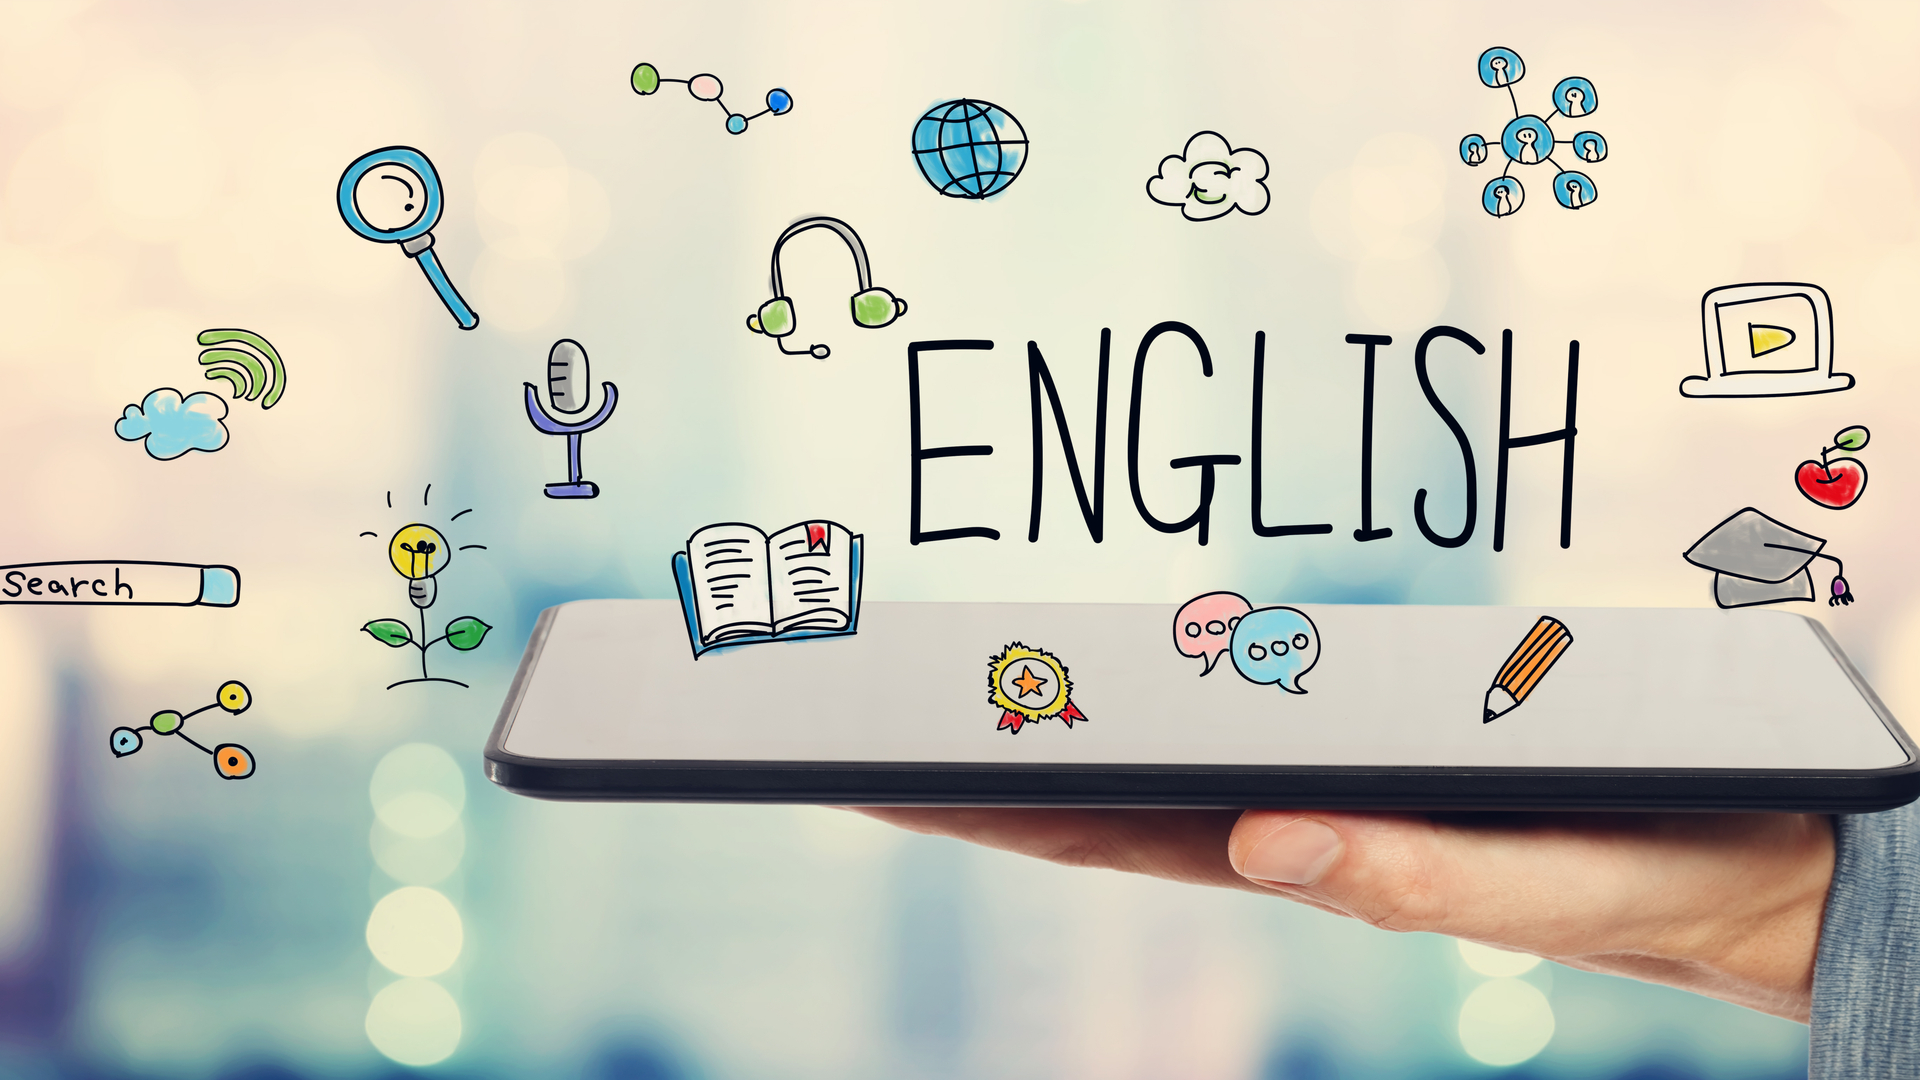 Cùng Học Tiếng Anh Với Chúng Tôi - Chìa Khóa Giúp Bạn Tự Tin Khi Giao Tiếp  - Phienglish - Tiếng Anh Giao Tiếp Trực Tuyến 1 Kèm 1